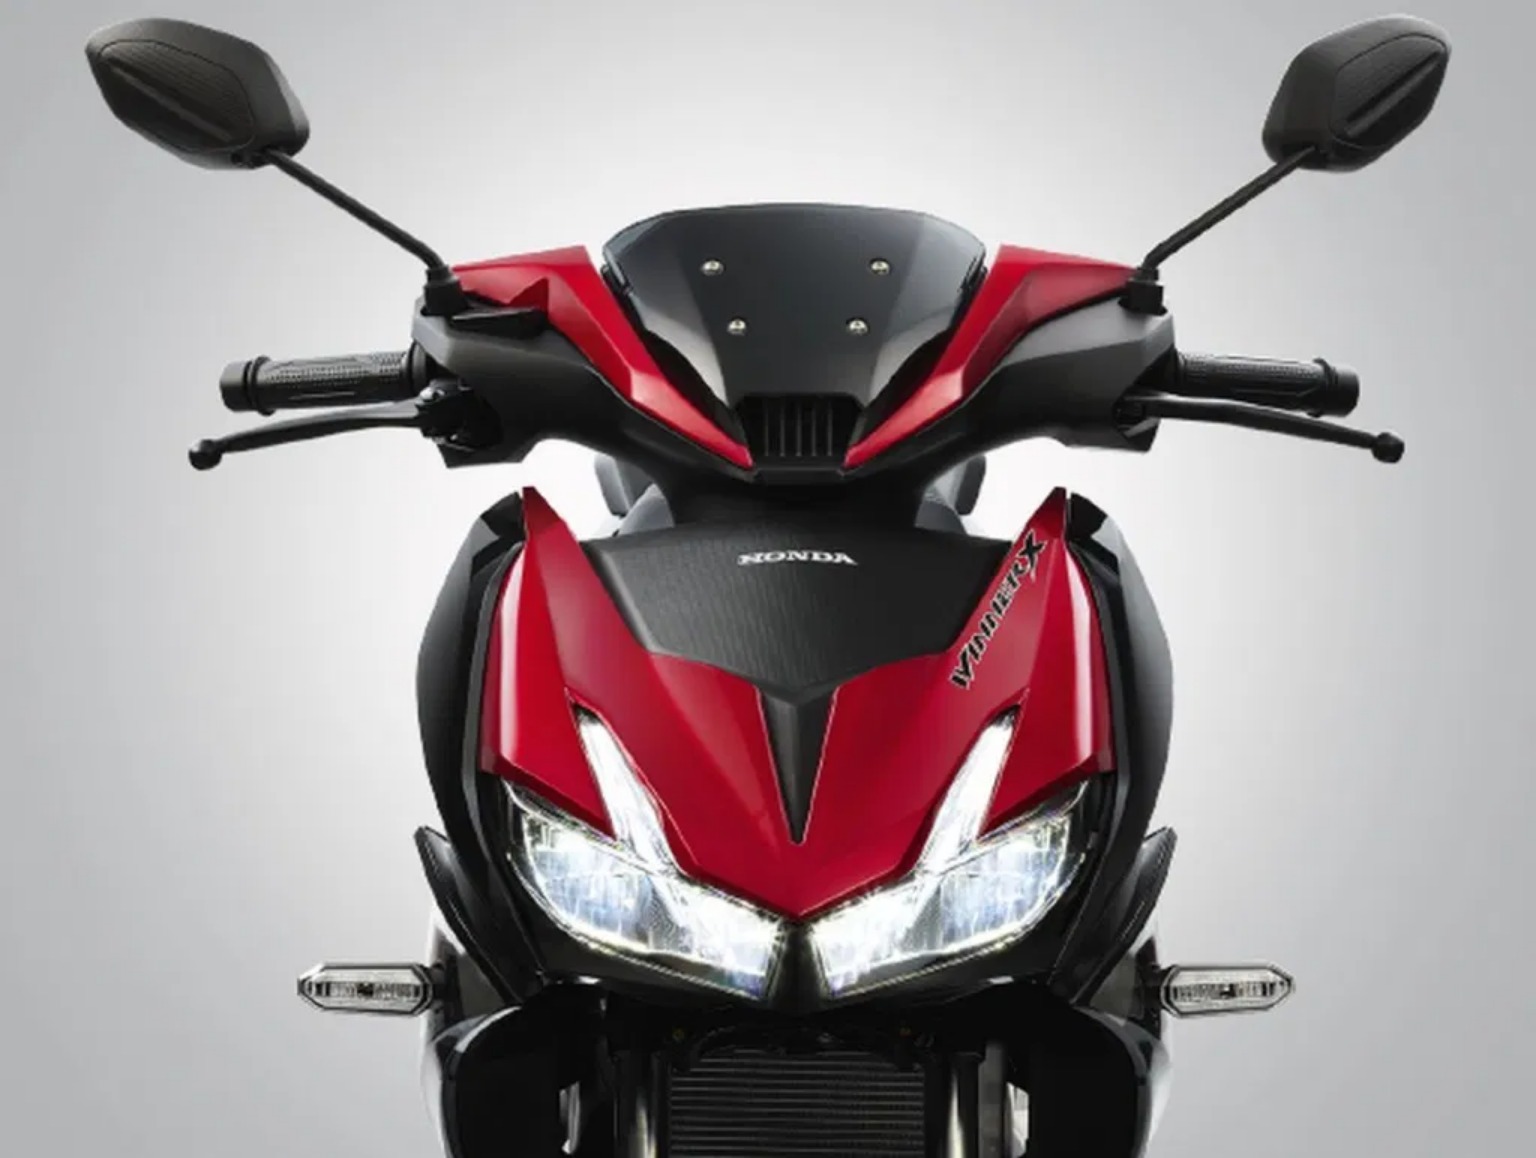 Honda ra mắt phiên bản giới hạn Winner X màu đỏ đột phá mới, giá 45,990,000 VNĐ